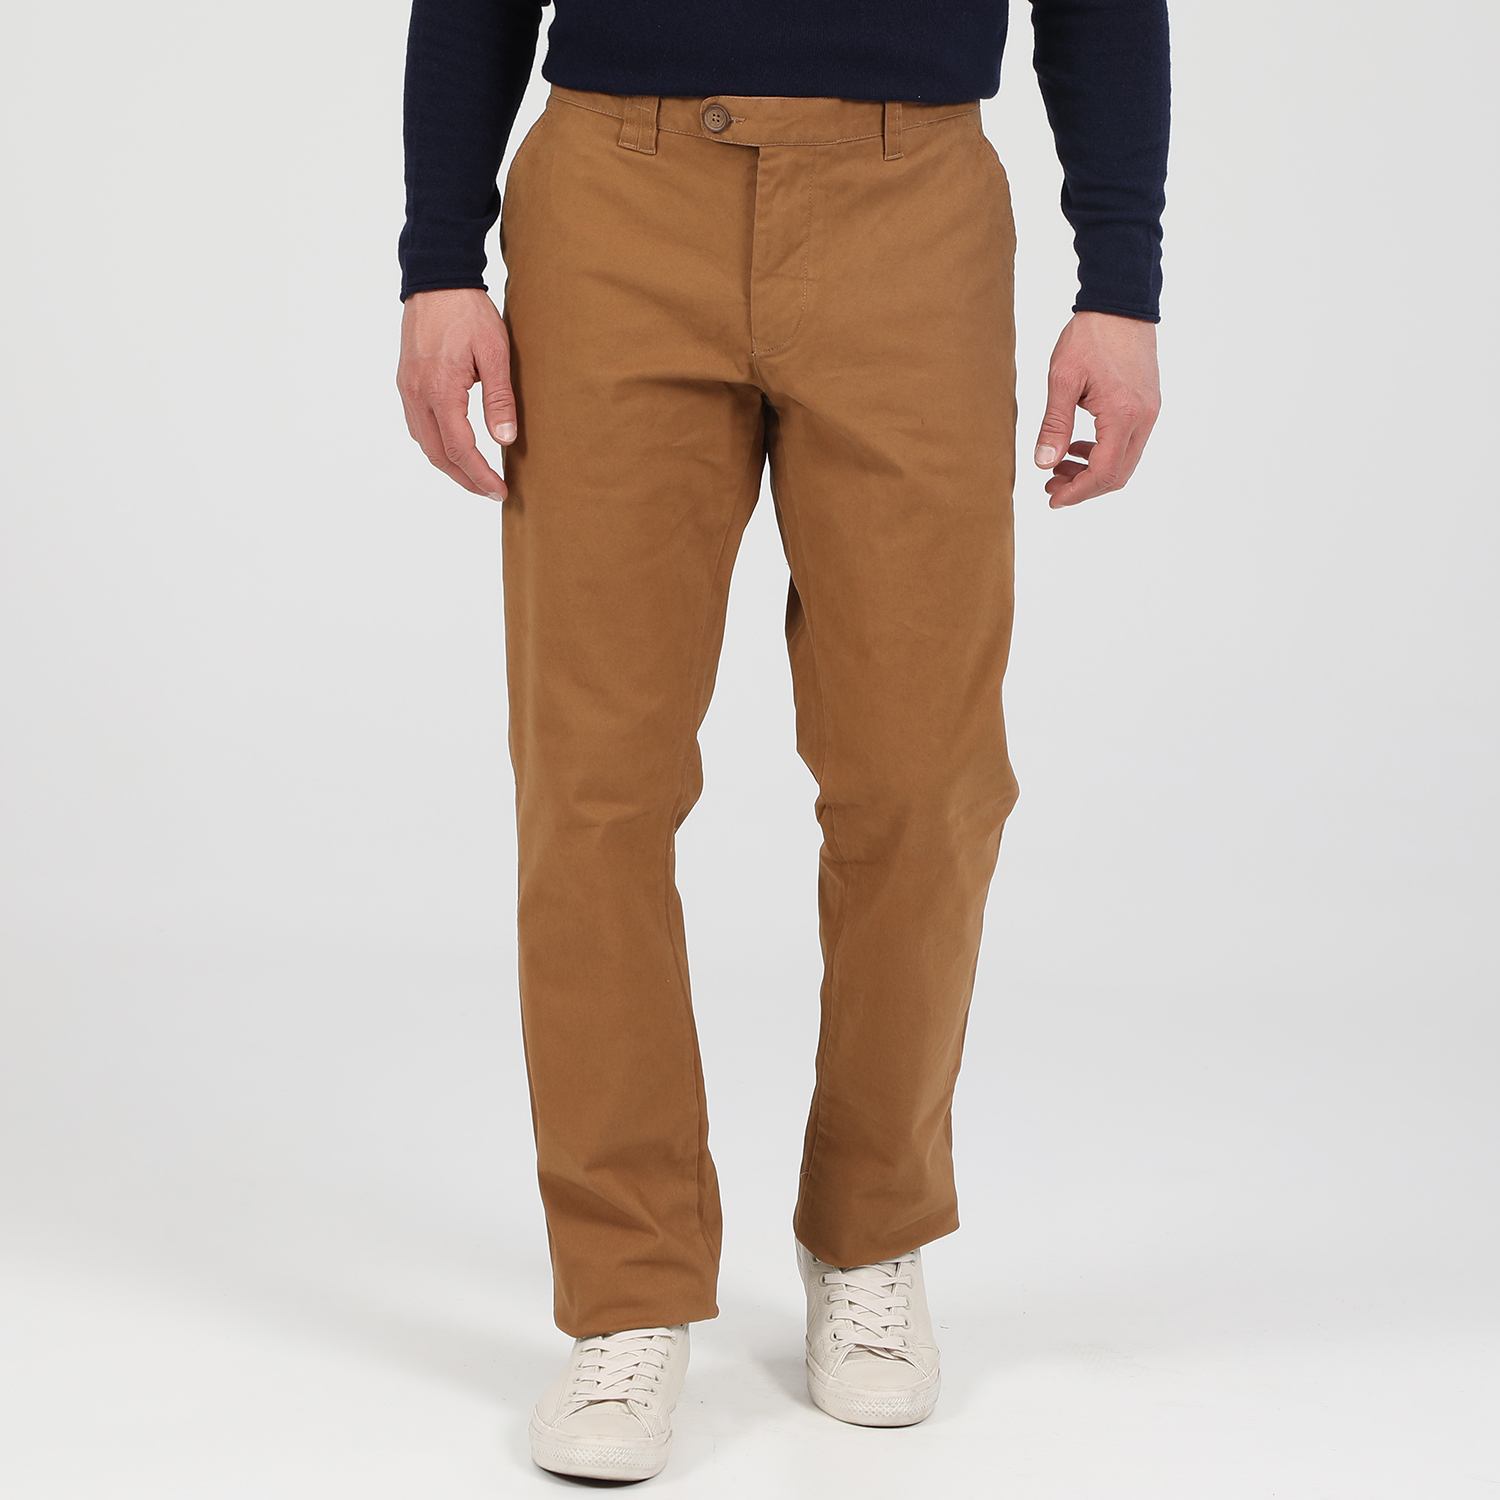 Ανδρικά/Ρούχα/Παντελόνια/Chinos MARTIN & CO - Ανδρικό παντελόνι MARTIN & CO CHINO SLIM μπεζ καφέ